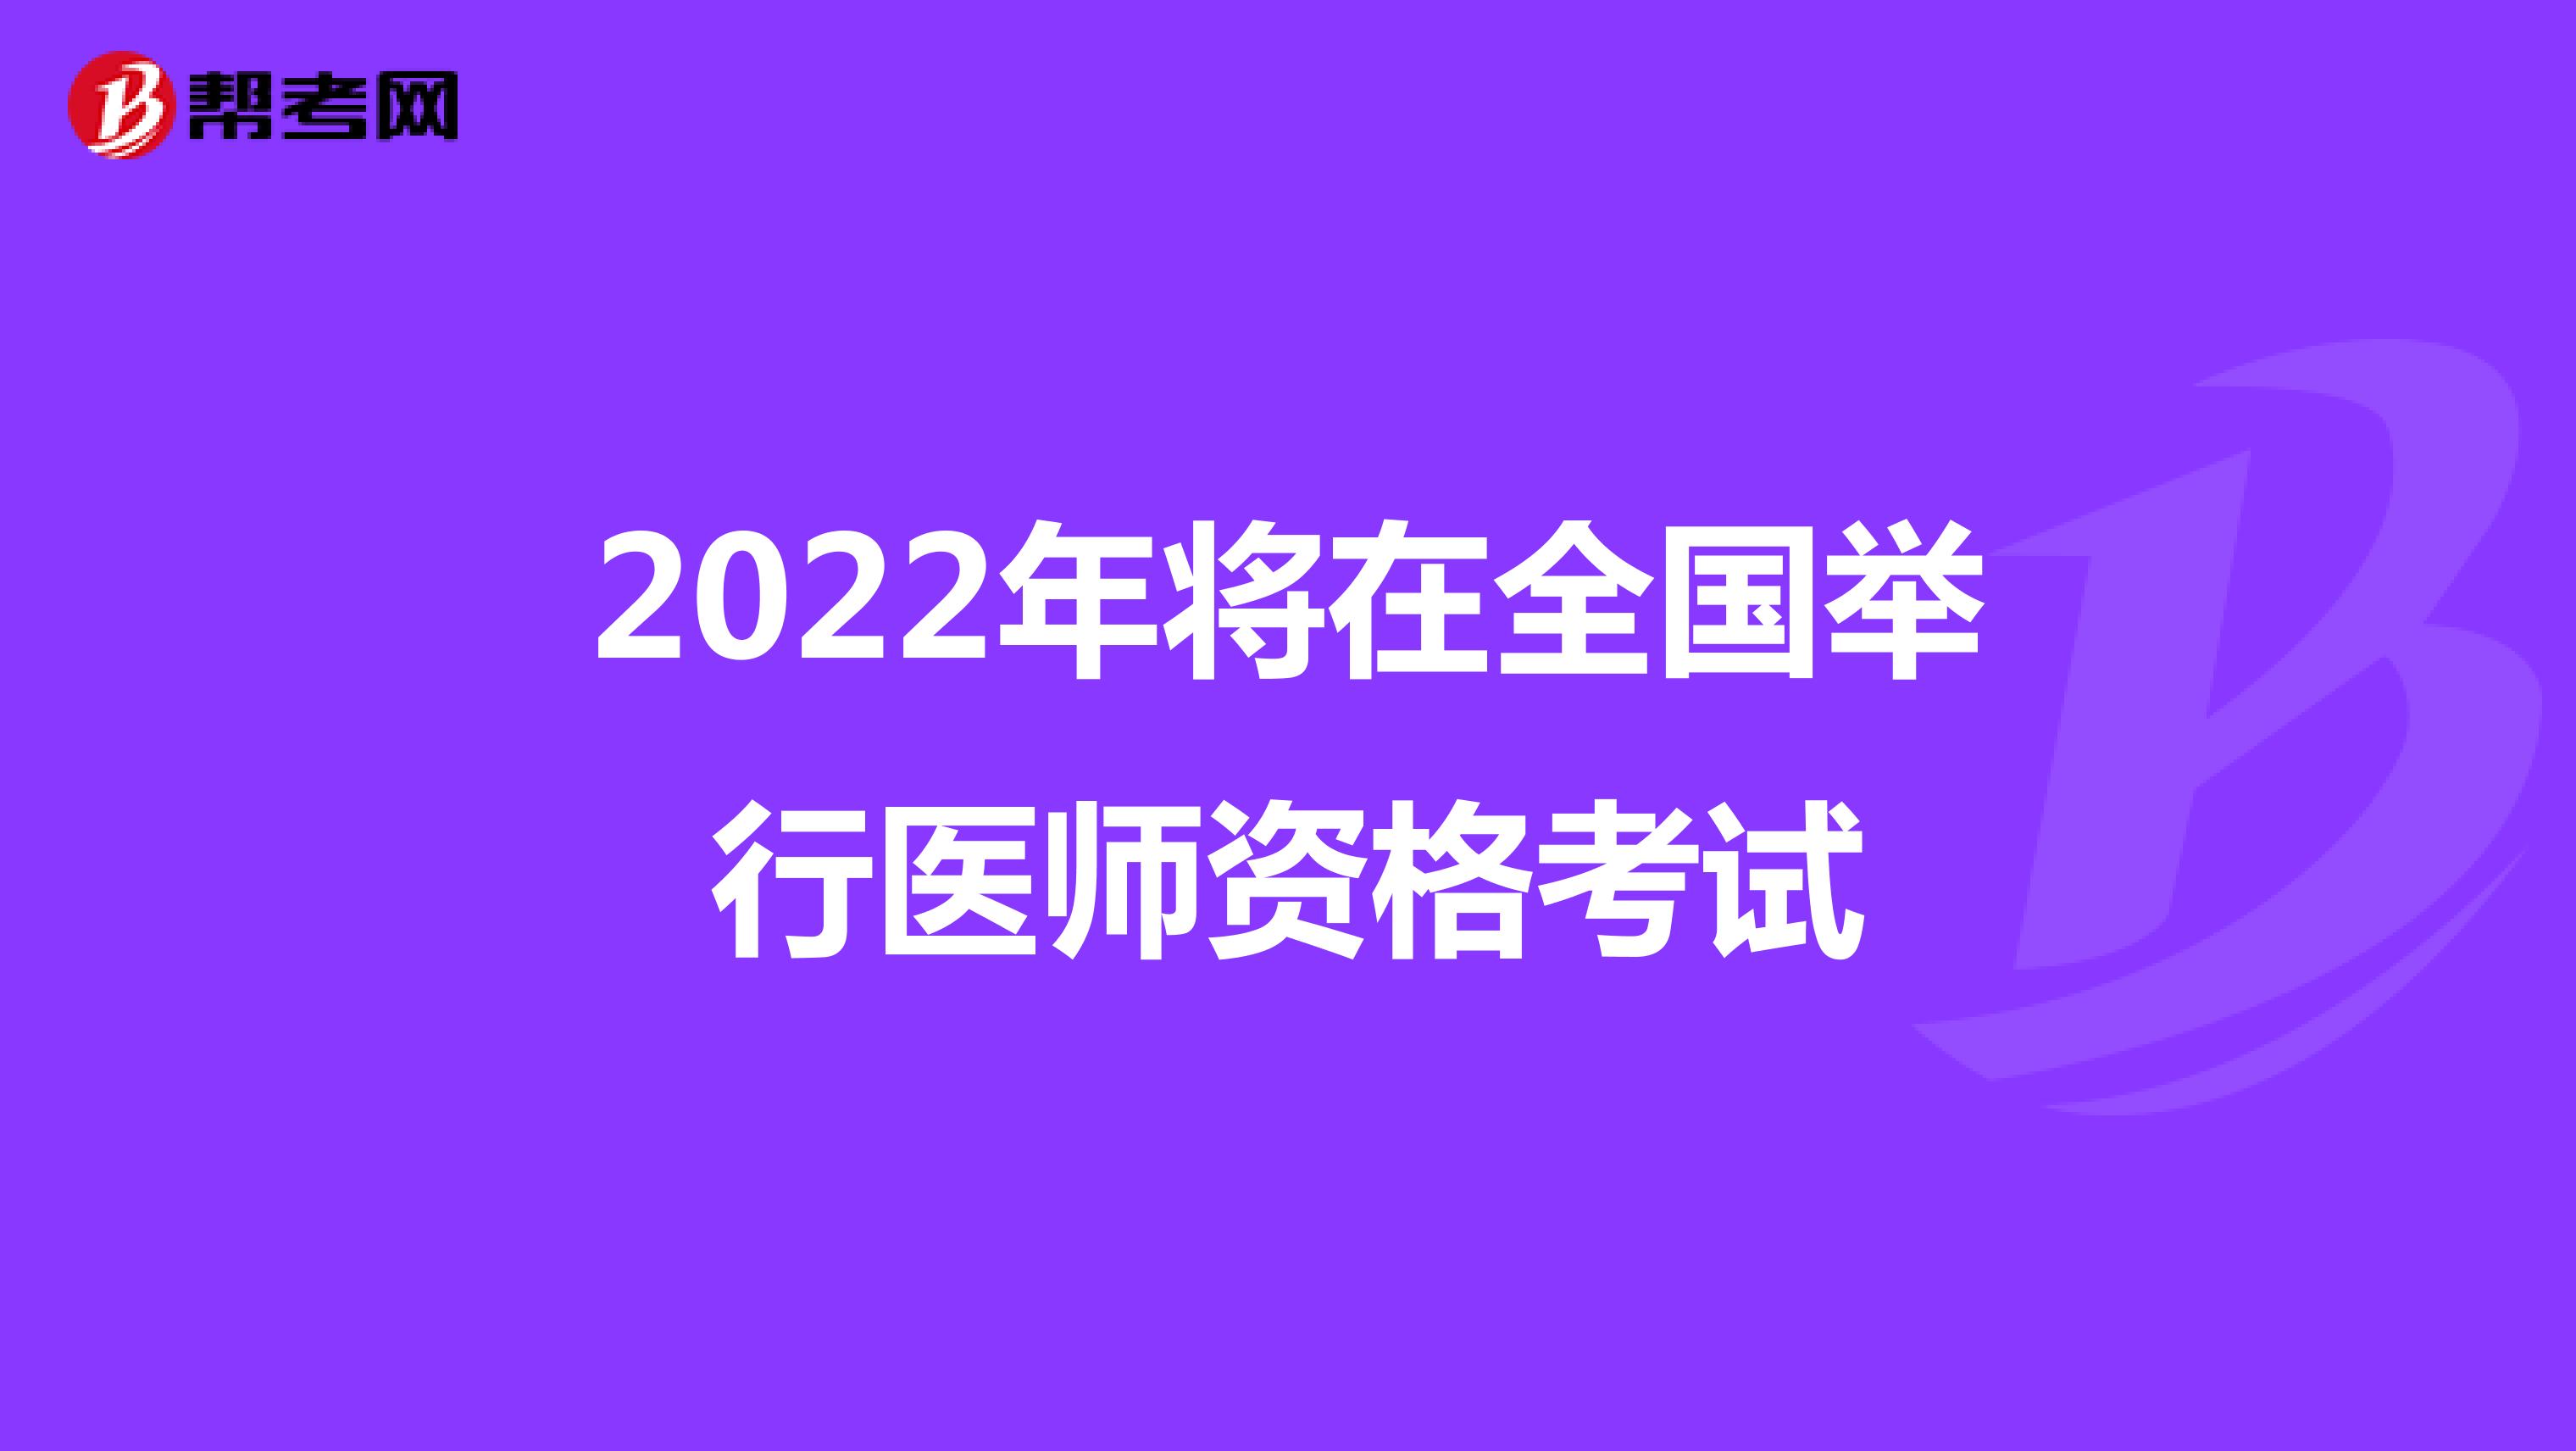 2022年将在全国举行医师资格考试